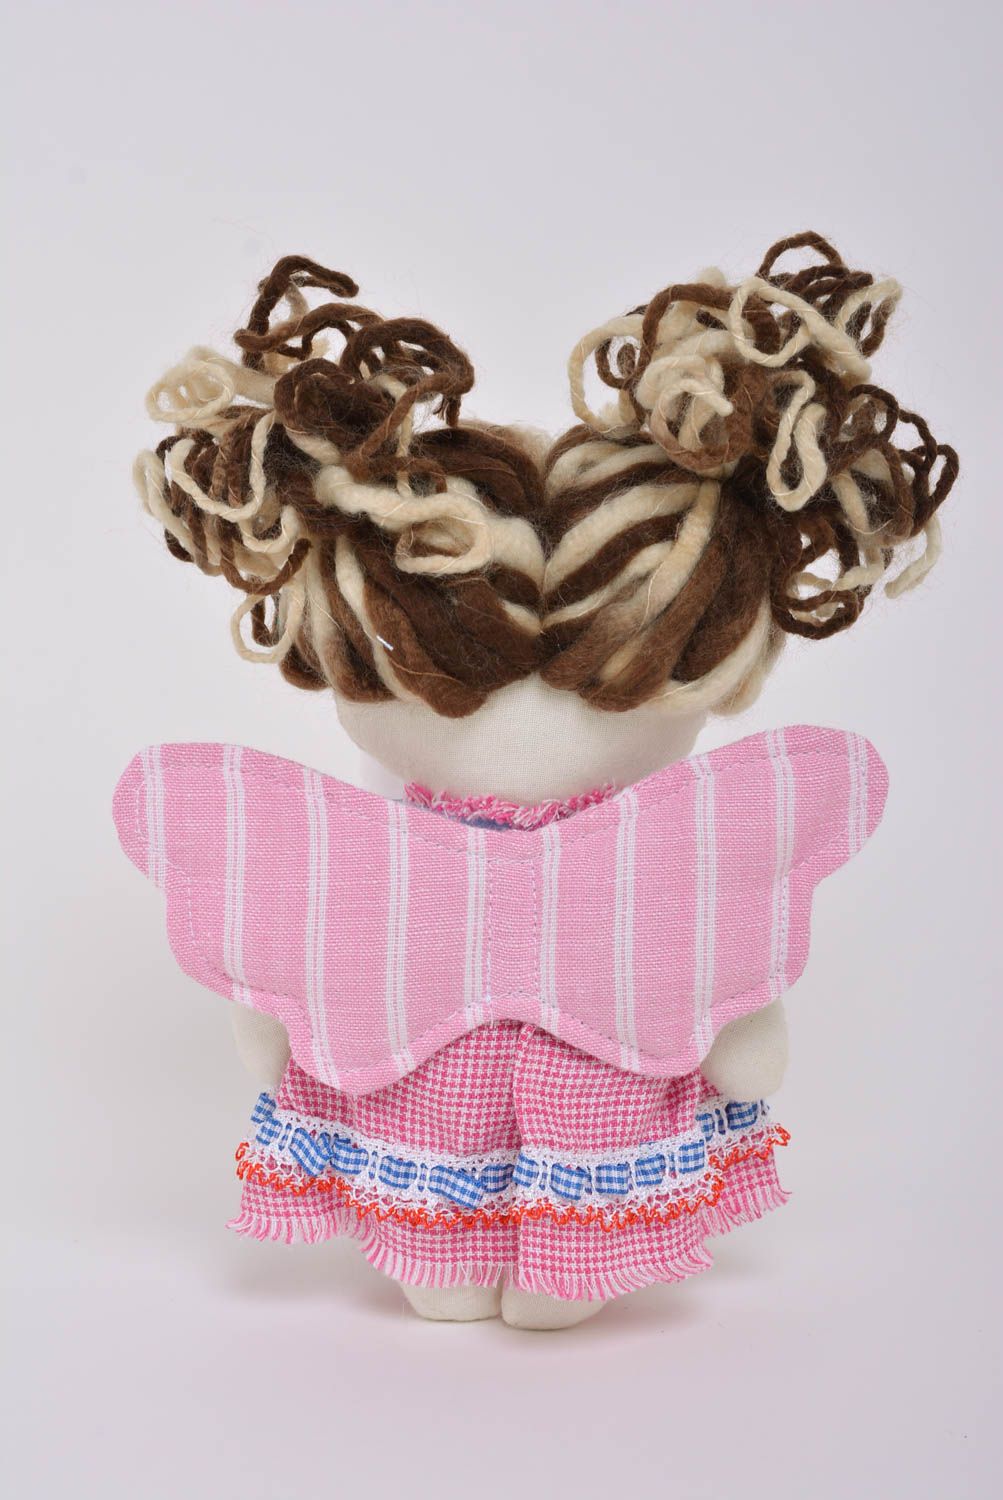 Handmade Puppe aus Stoff in Rosa schön klein im Kleid für kleine Prinzessin foto 3